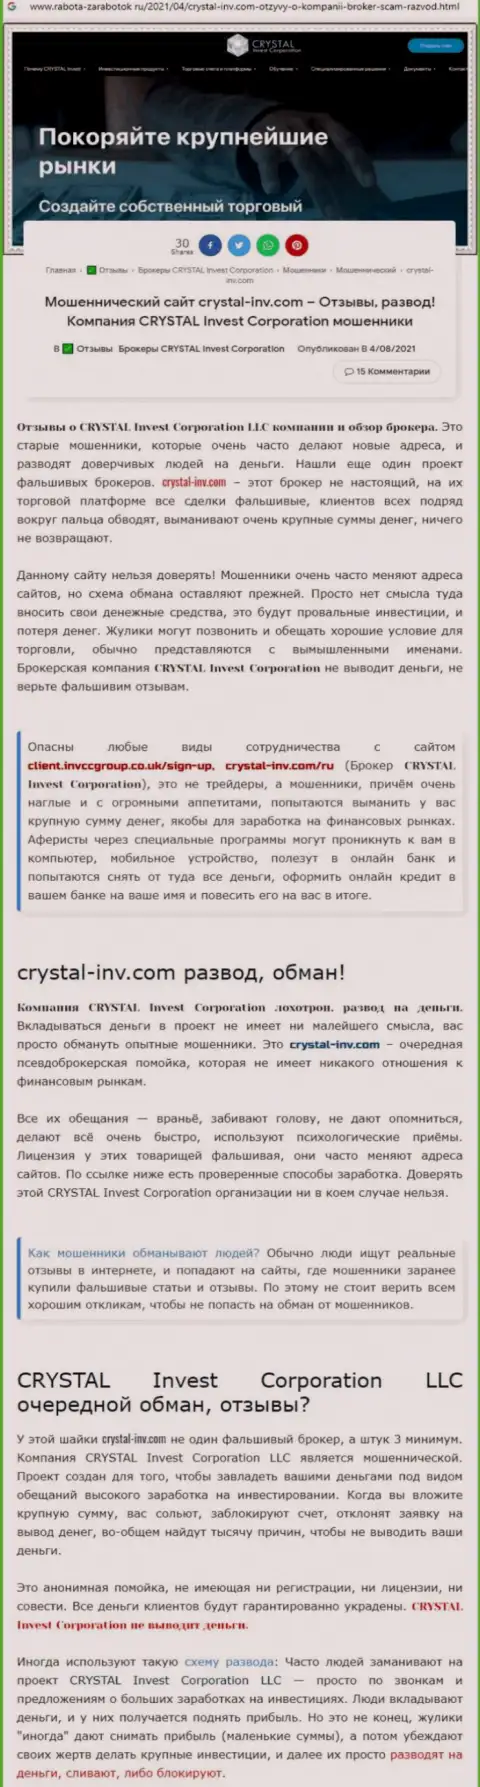 Материал, выводящий на чистую воду организацию Crystal-Inv Com, взятый с сайта с обзорами различных контор